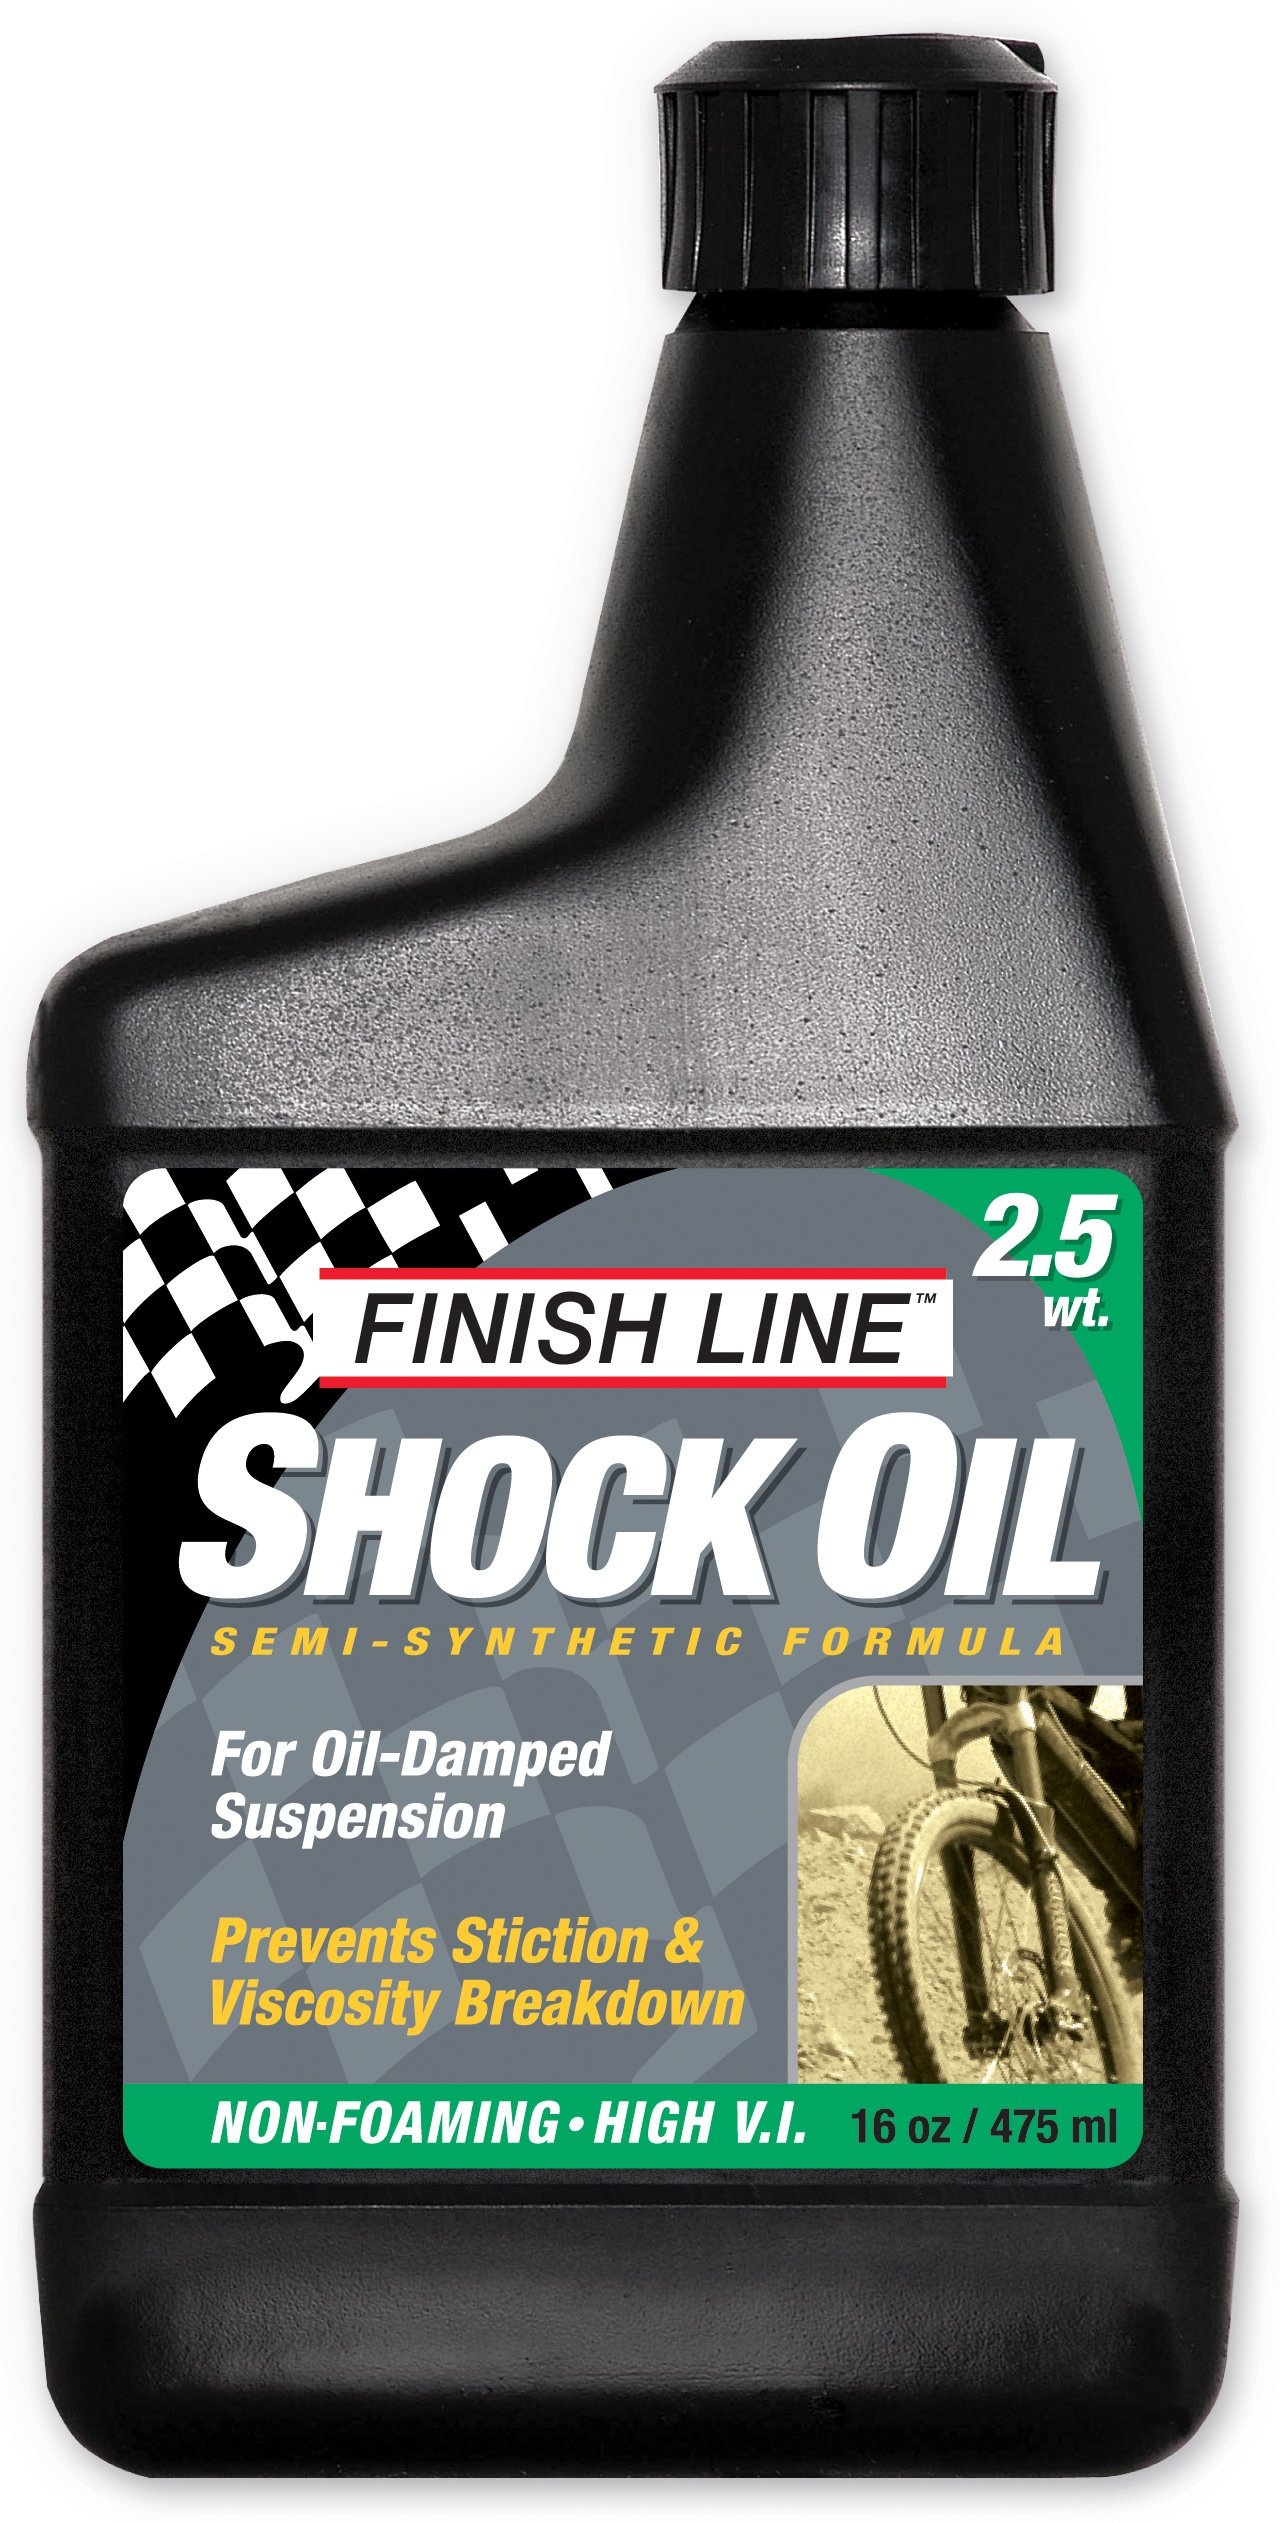 Tilbehør - Olie / Fedt - Finish Line Shock Oil Forgaffelolie 2.5wt